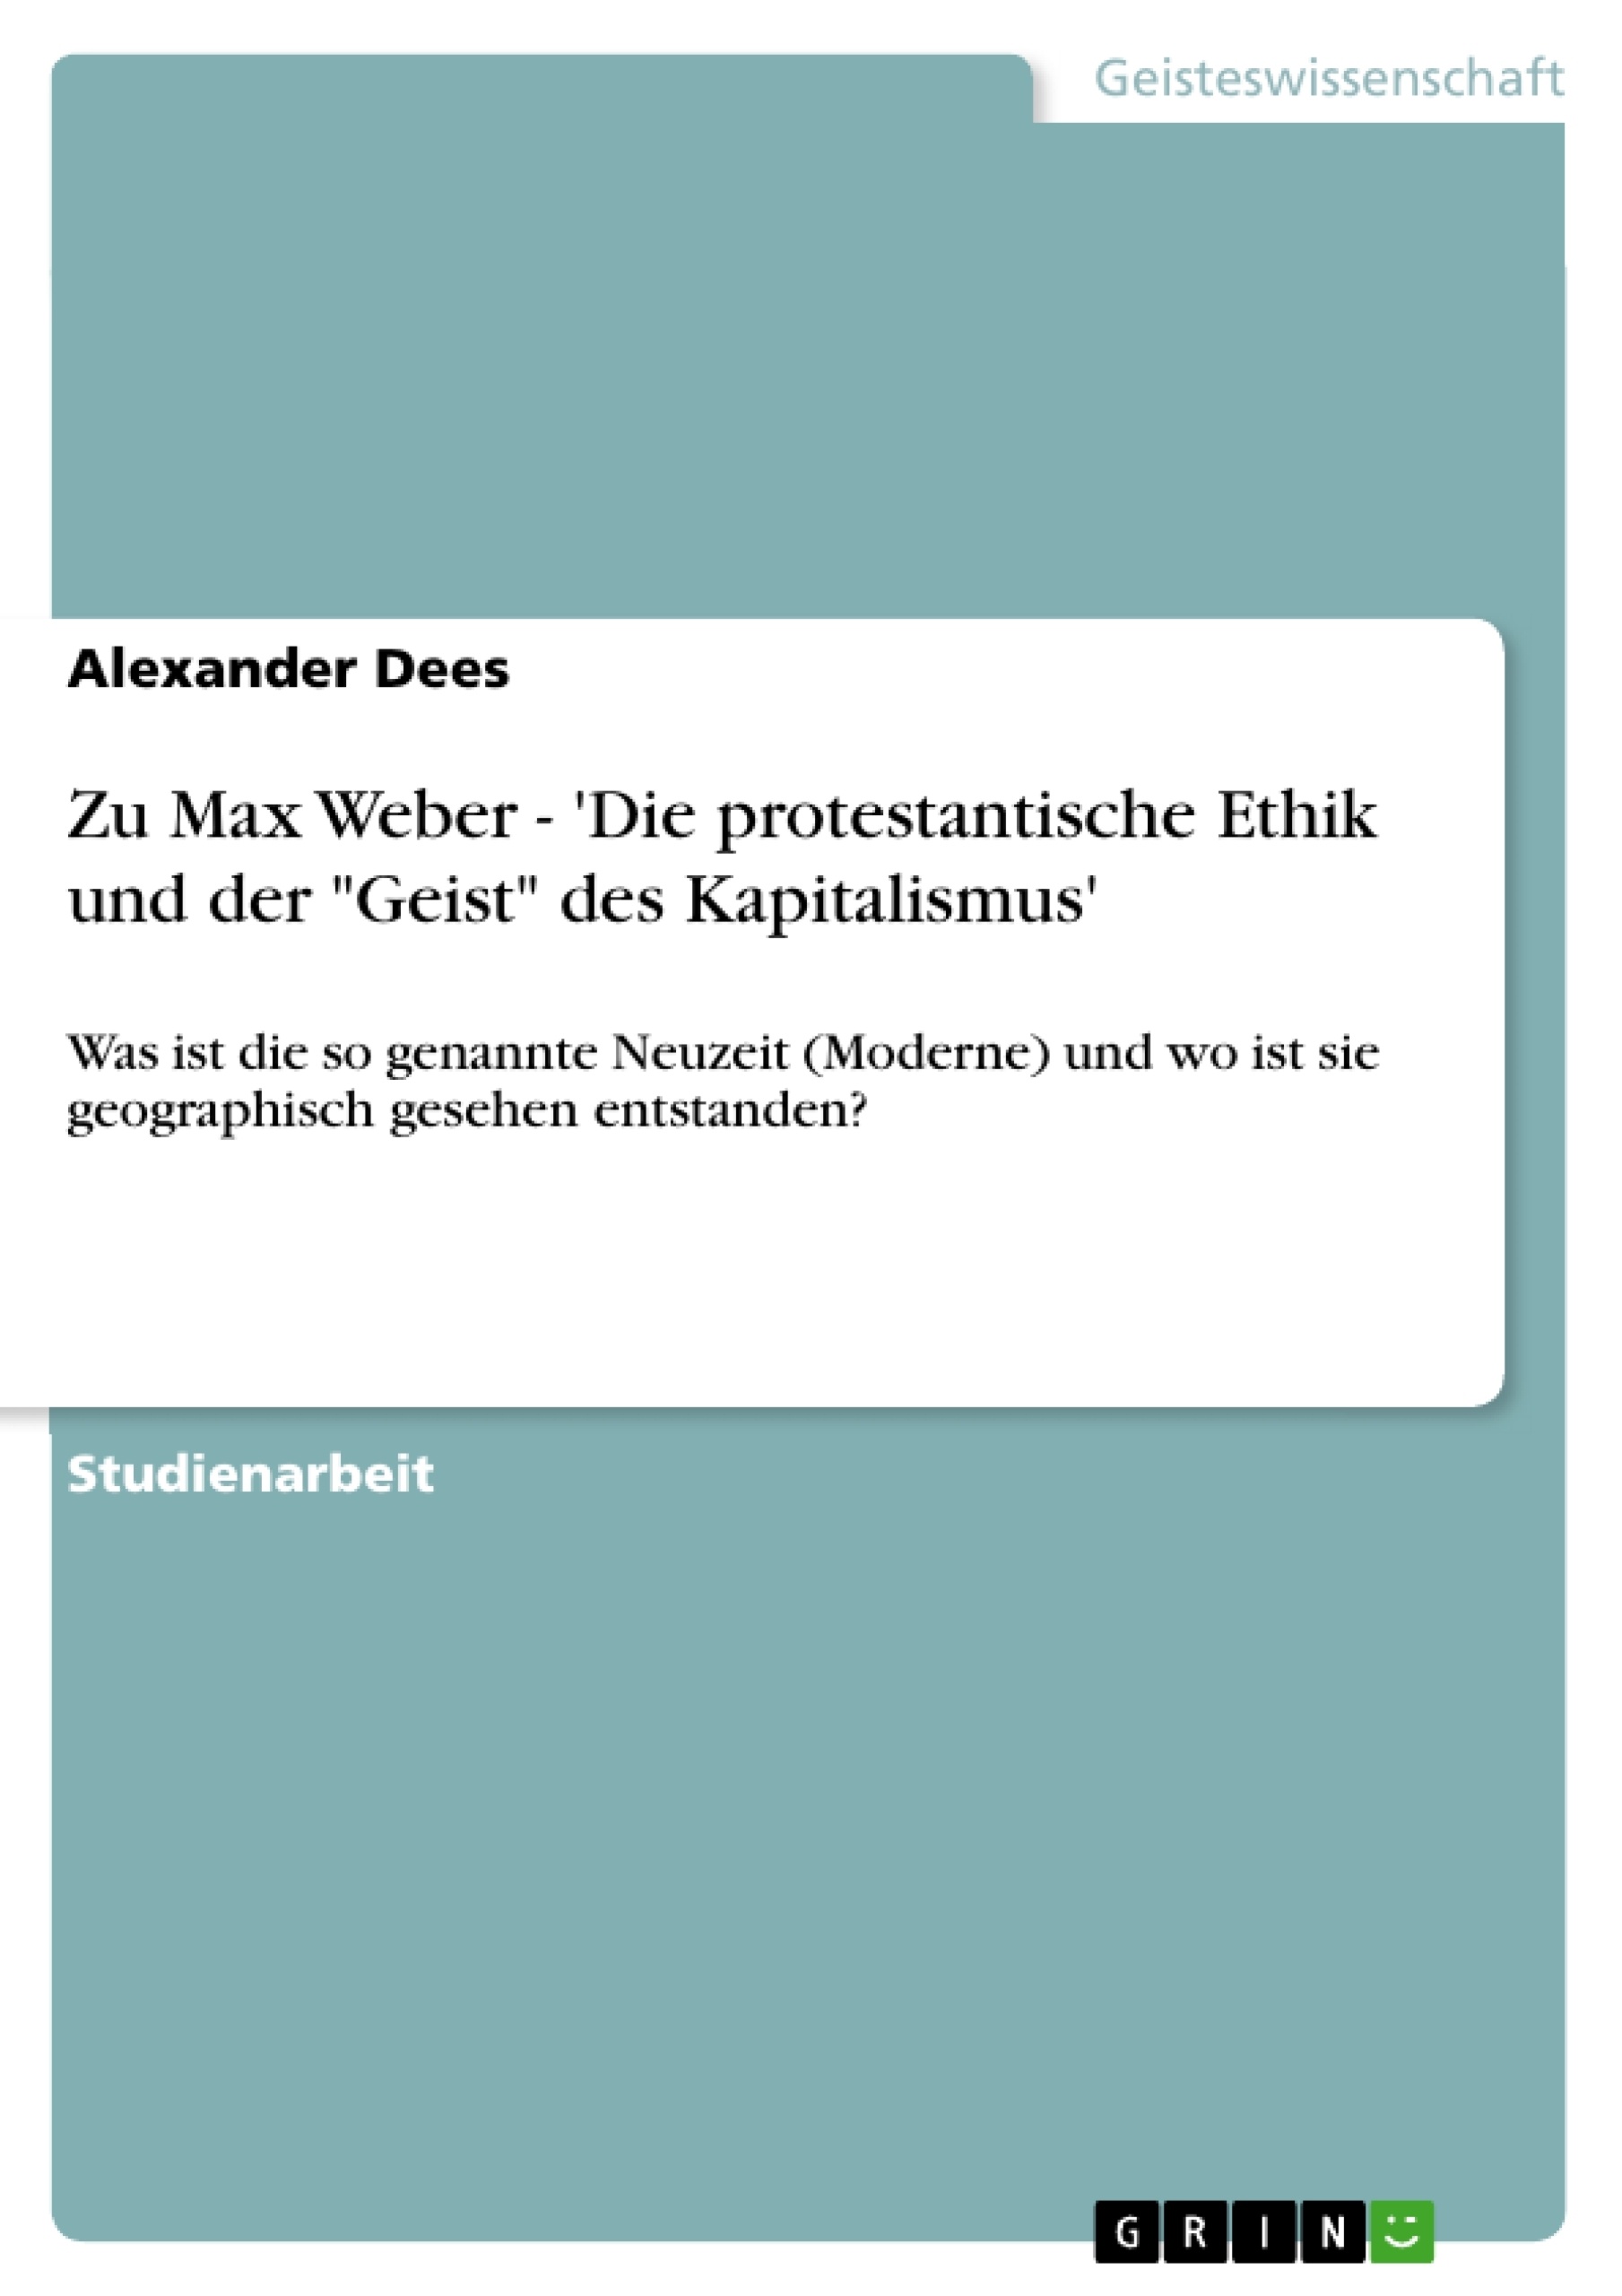 Title: Zu Max Weber - 'Die protestantische Ethik und der "Geist" des Kapitalismus'